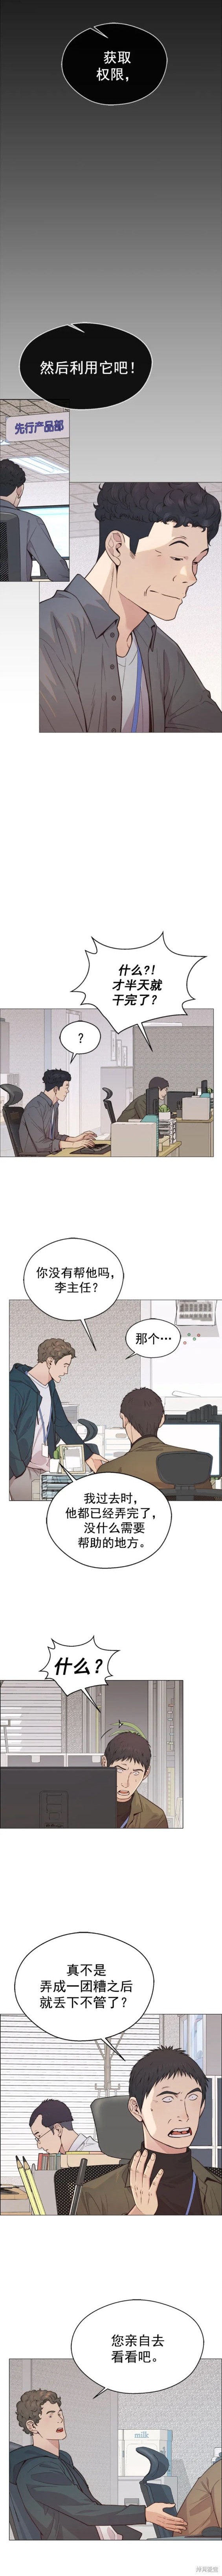 男子汉漫画,第159话3图